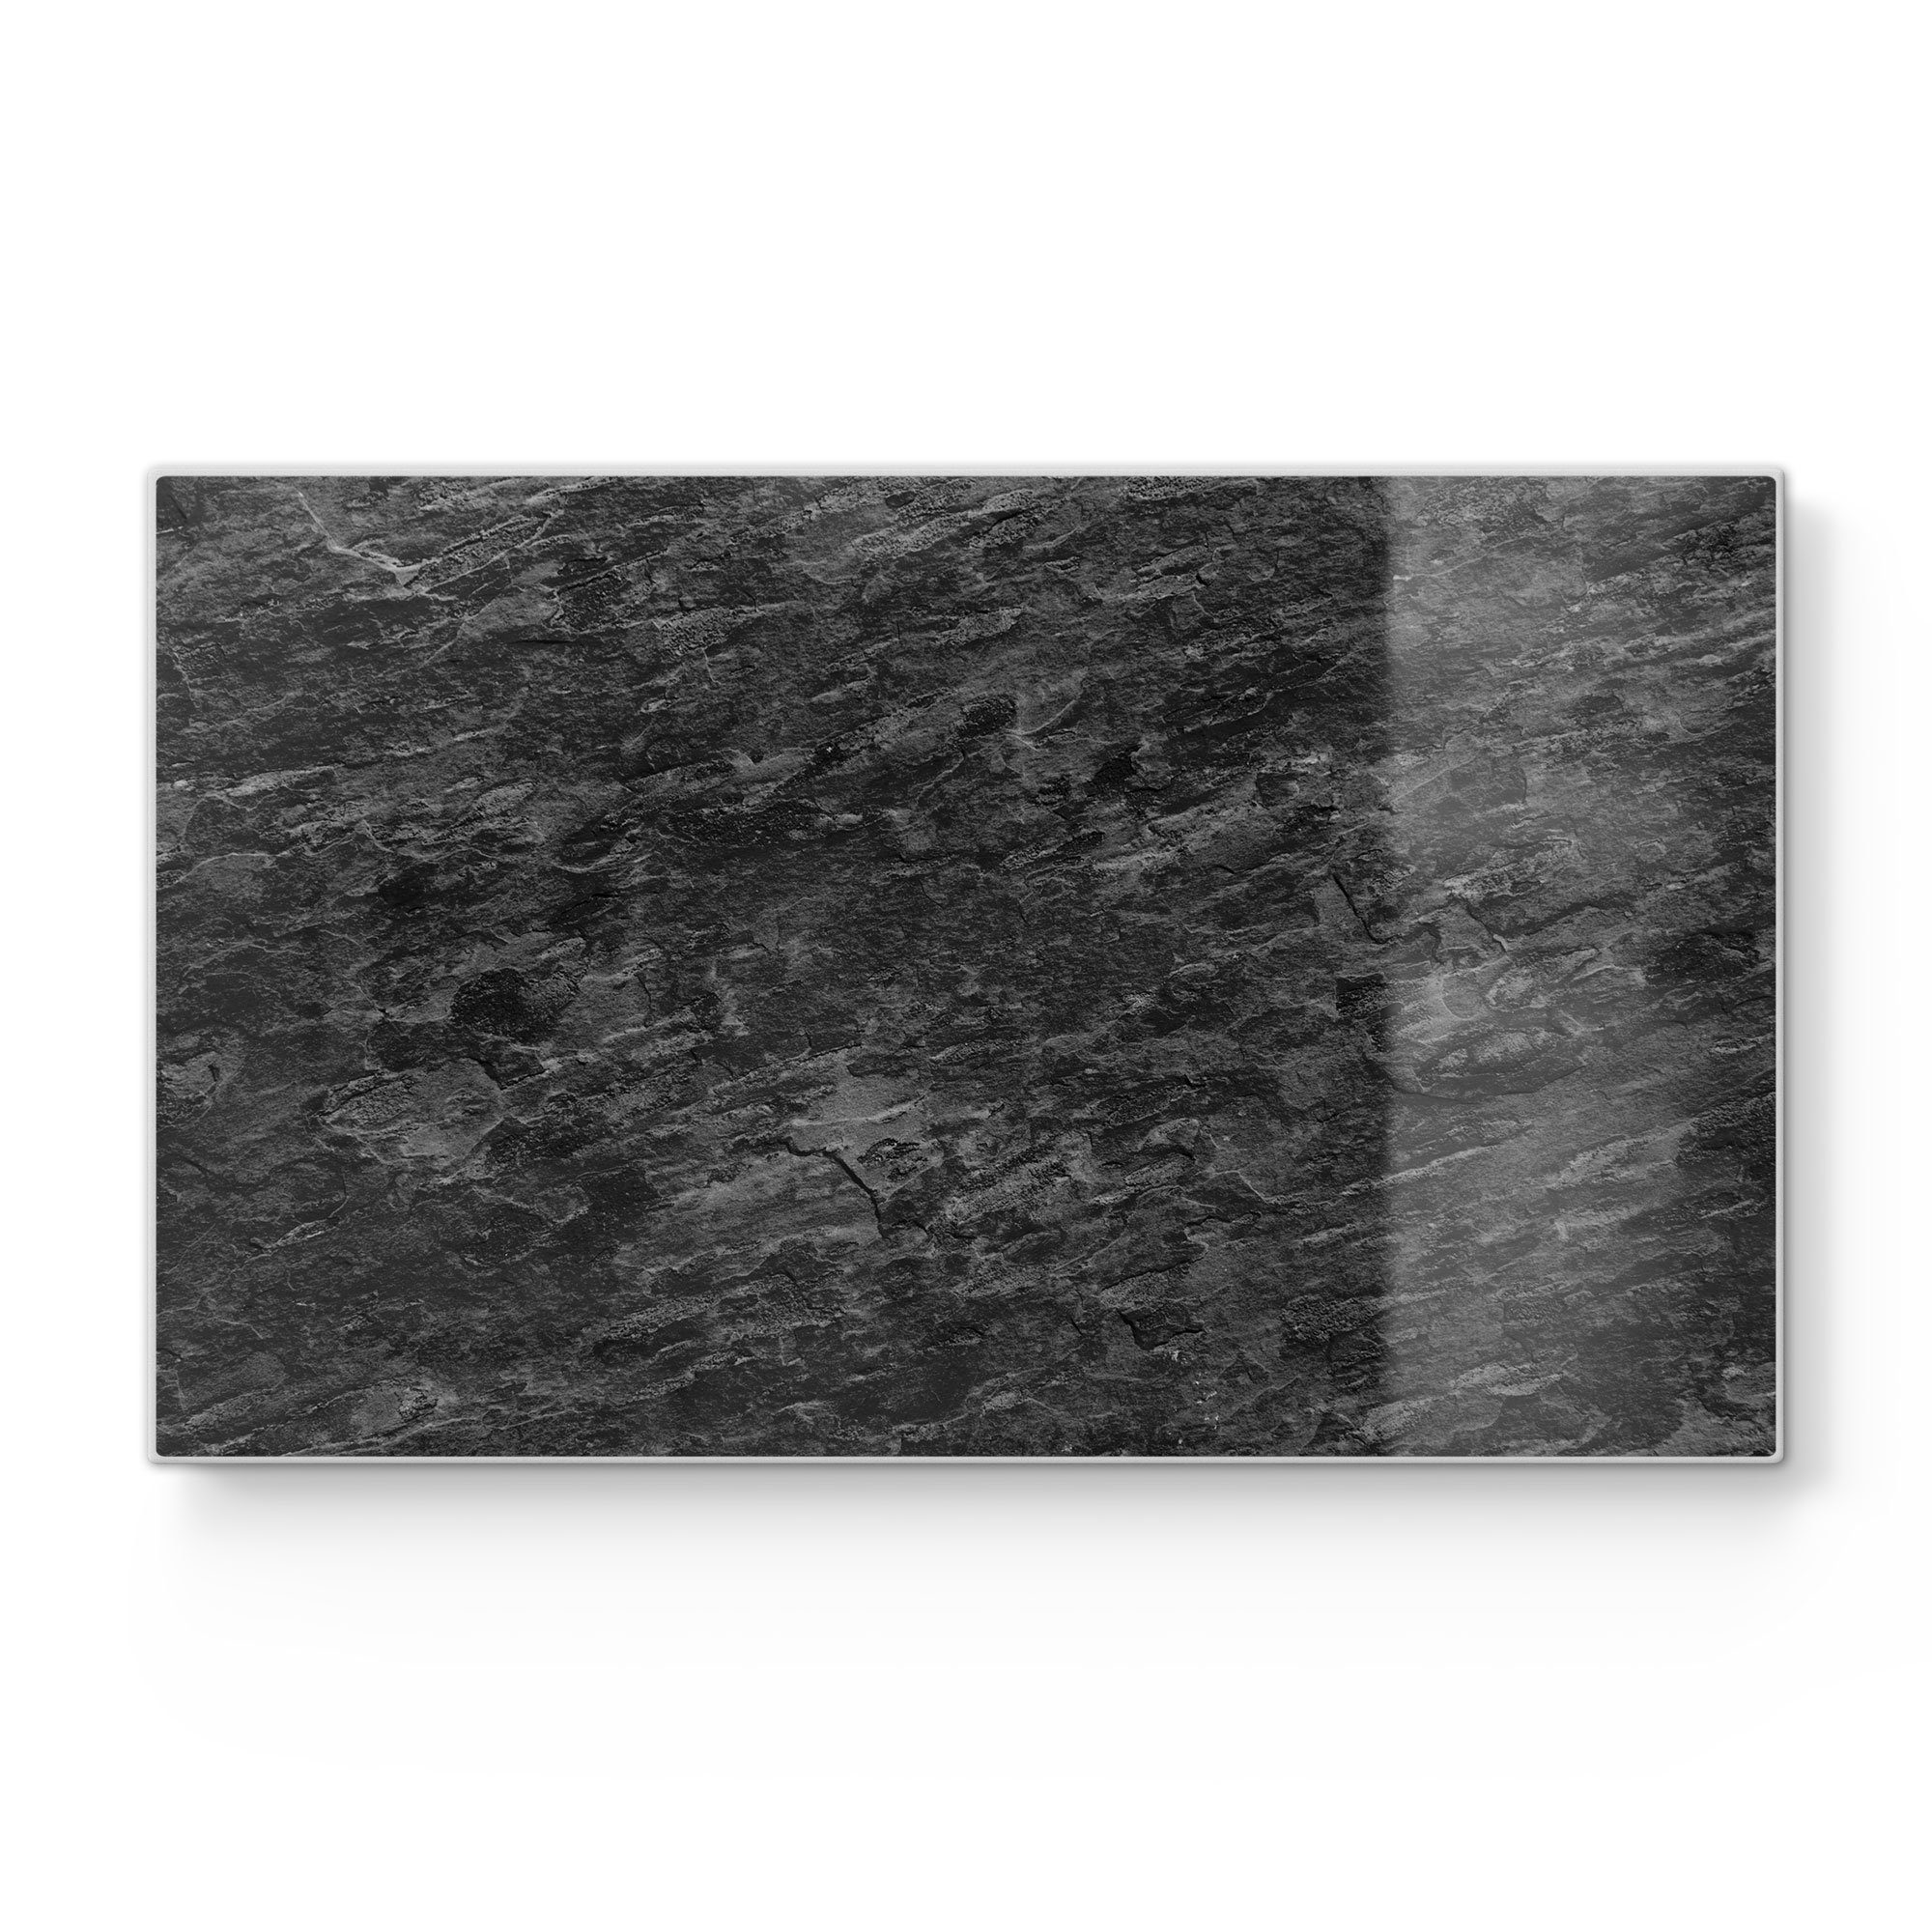 DEQORI Schneidebrett 'Dunkle Steinstruktur', Glas, Frühstücksbrett Schneideplatte Platte